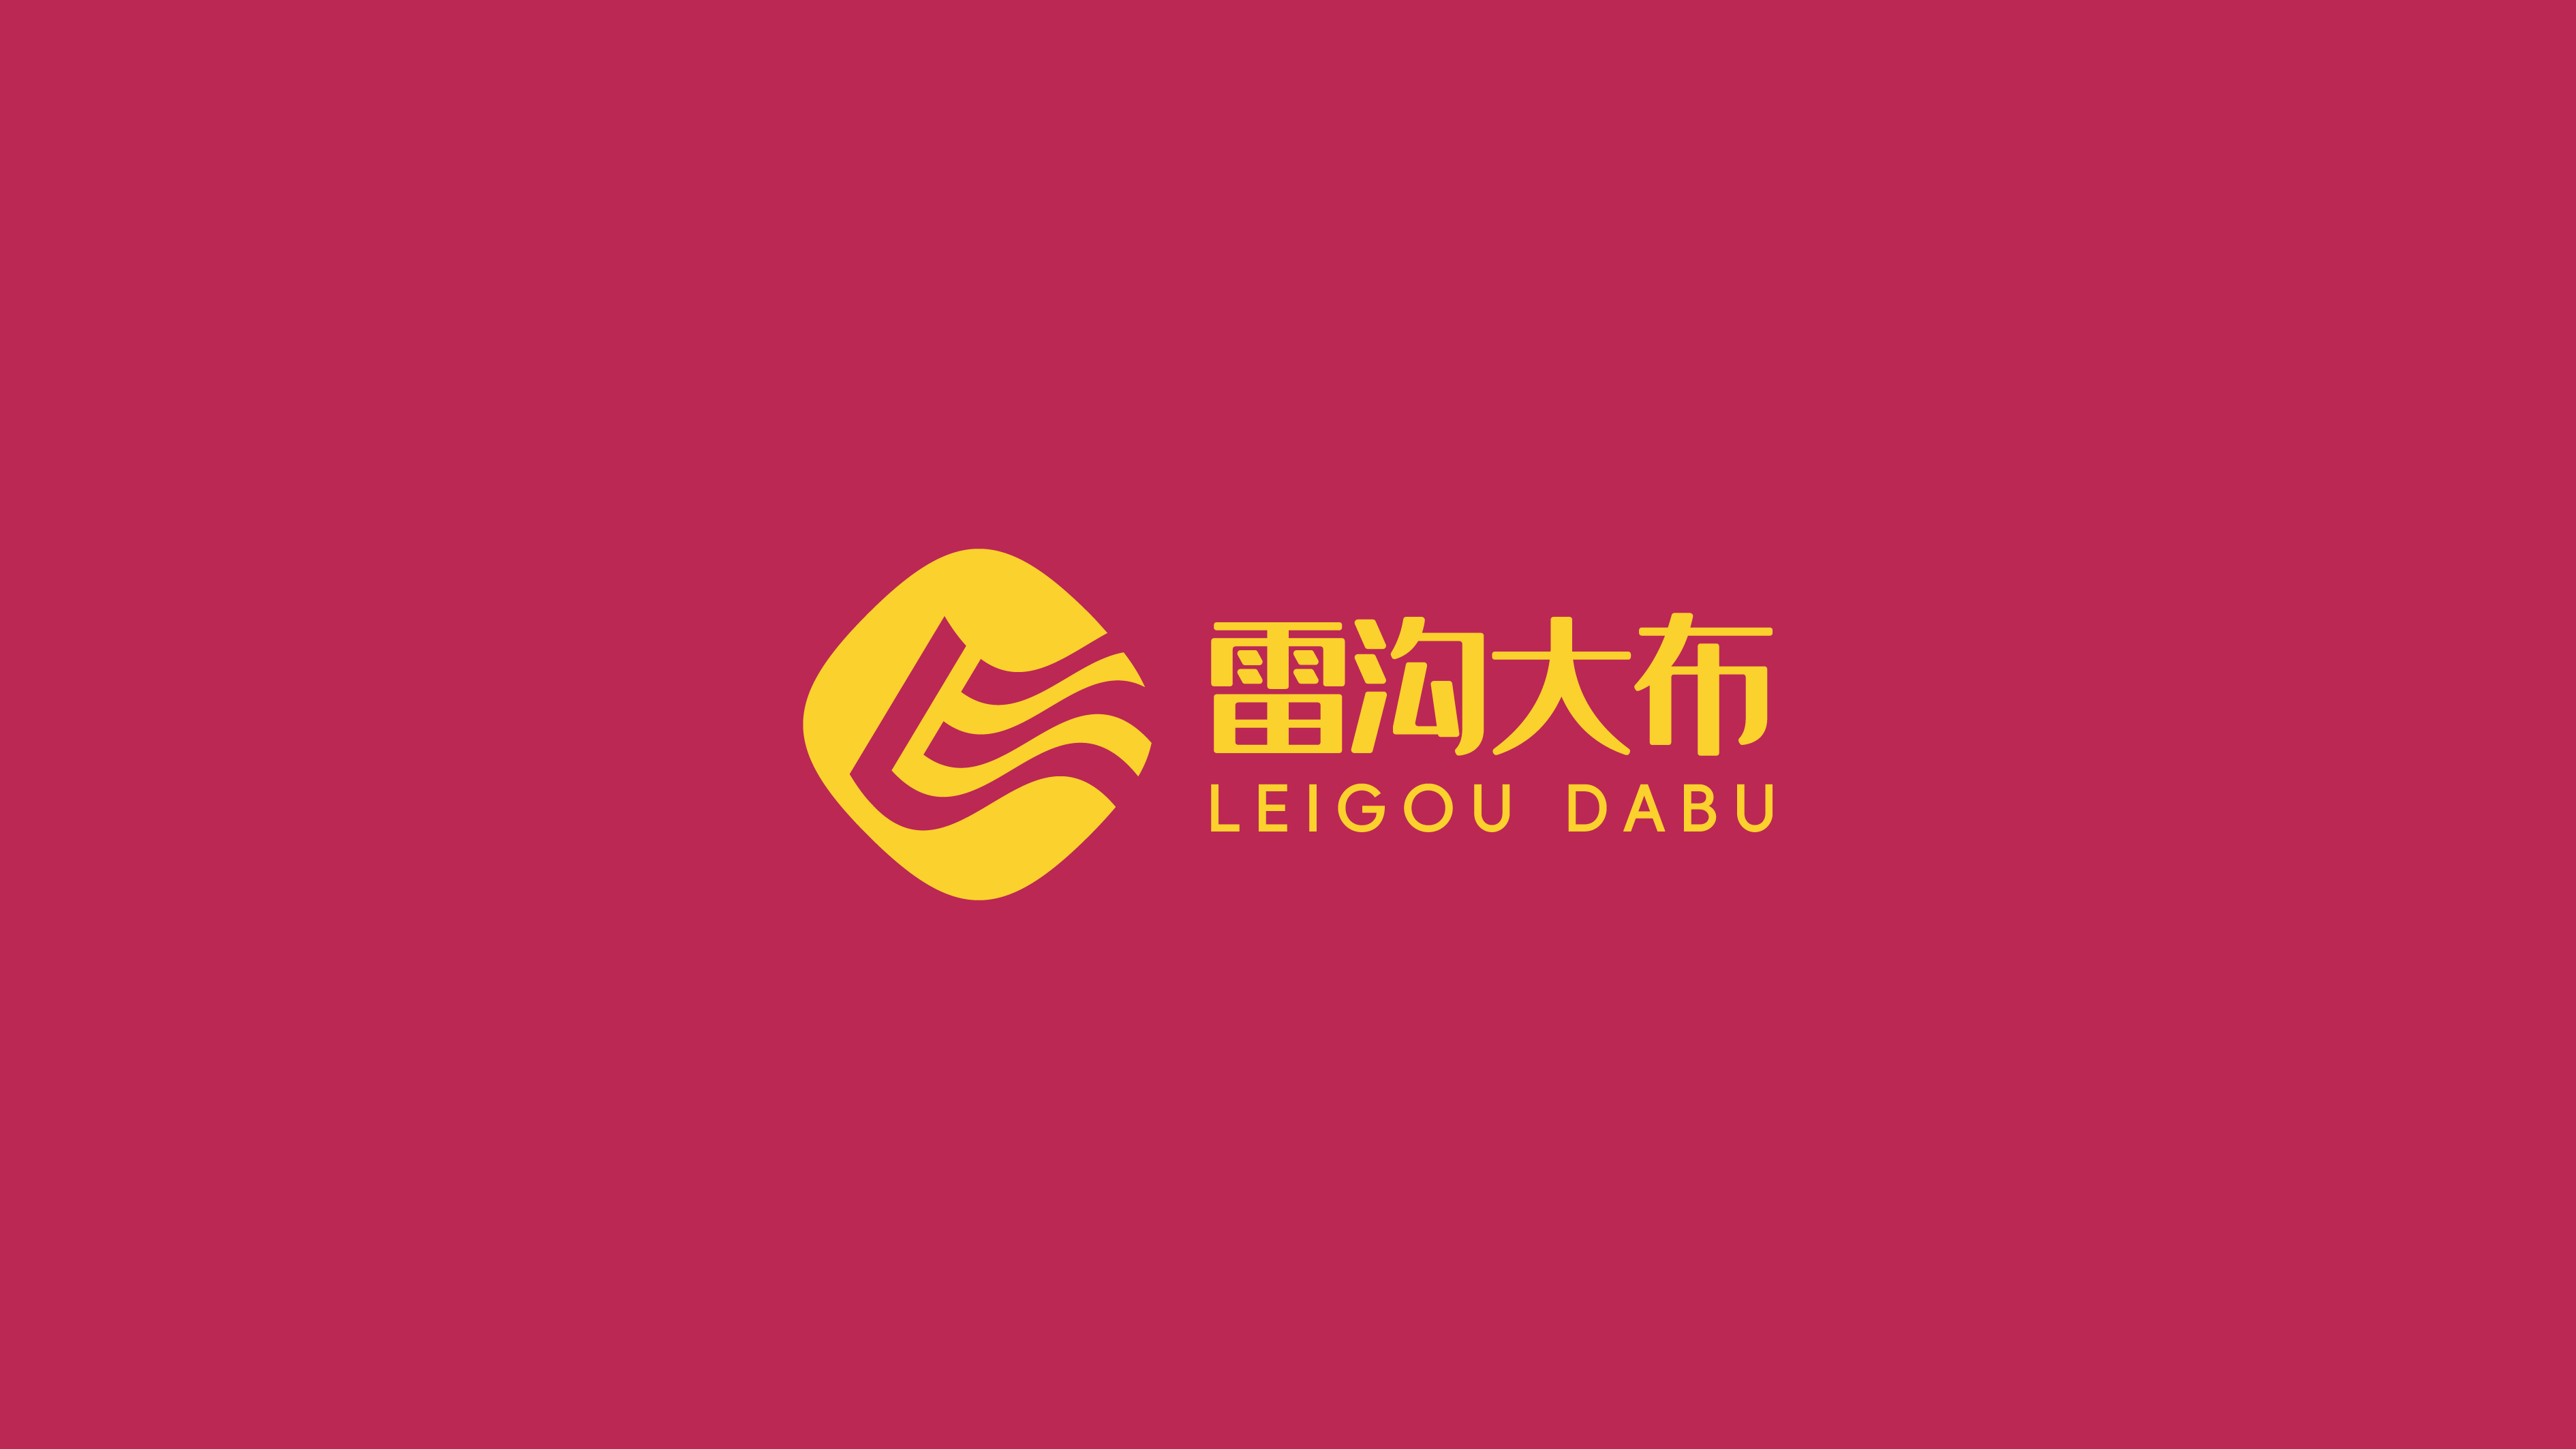 纺织品类logo设计